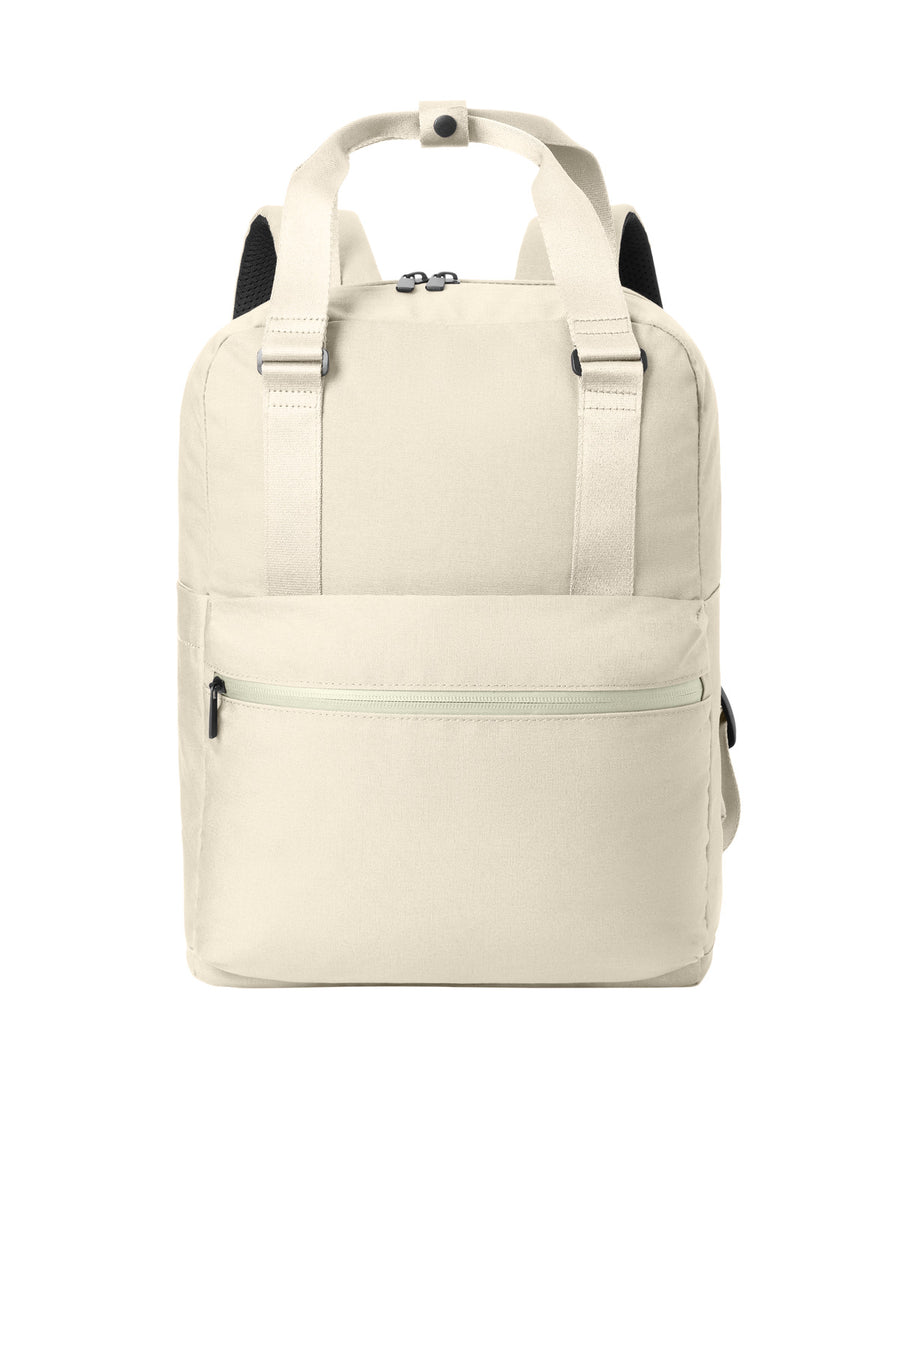 Mercer+Mettle‚Ñ¢ Claremont Handled Backpack MMB211